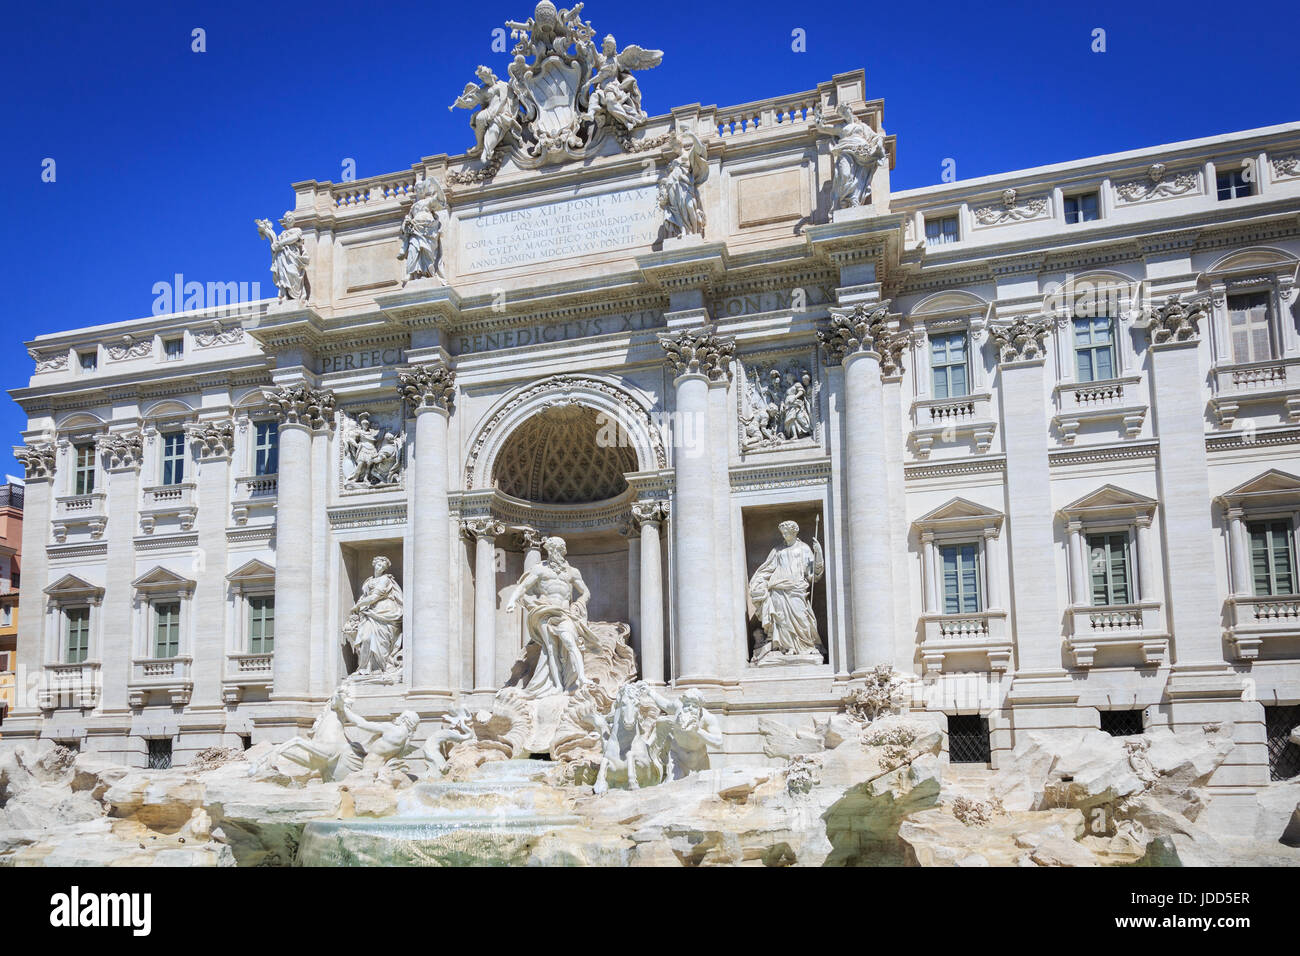 Der Trevi-Brunnen, die Fontana di Trevi, ist a, Brunnen, Trevi im Stadtteil, Rom, Italien, Italienisch, entworfen von Architekt, Nicola Salvi und kompl. Stockfoto